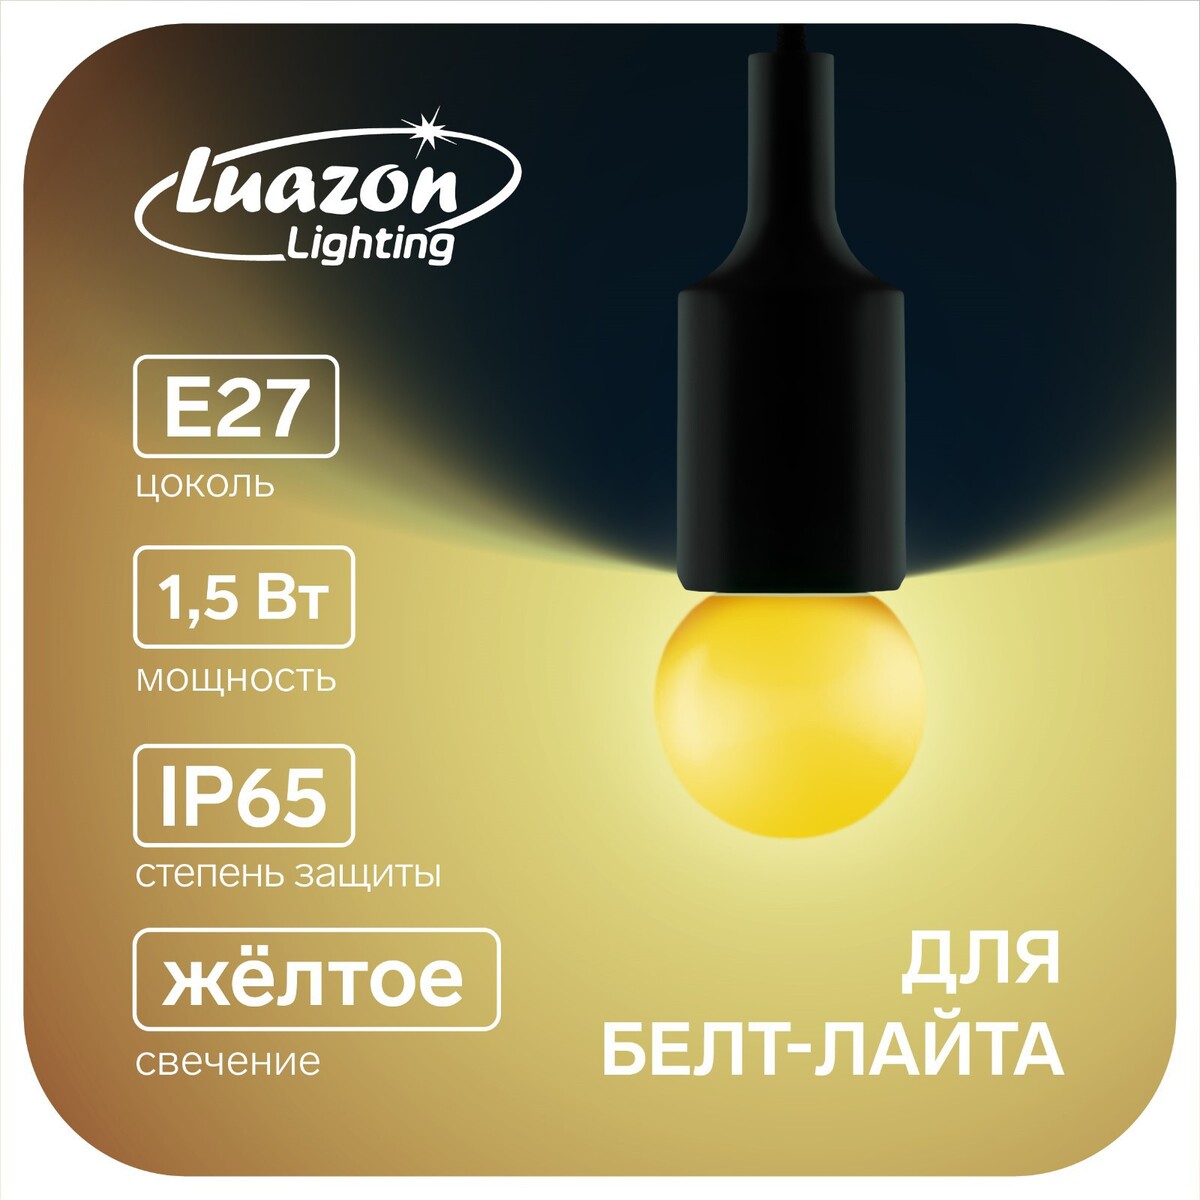 Лампа светодиодная luazon lighting, g45, е27, 1.5 вт, для белт-лайта, желтая, наб 20 шт лампа светодиодная skyway t11 c5w 12 в 1 диод hp 6 вт с цоколем 31 мм s08201152